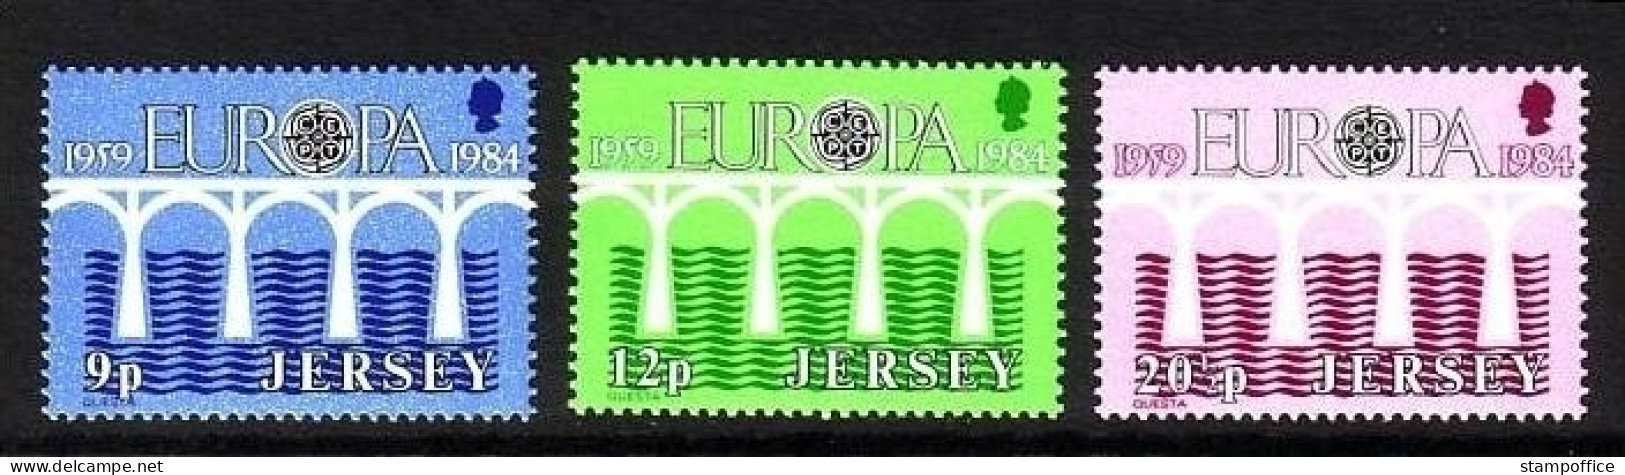 JERSEY MI-NR. 320-322 POSTFRISCH(MINT) EUROPA 1984 - BRÜCKE - 1984